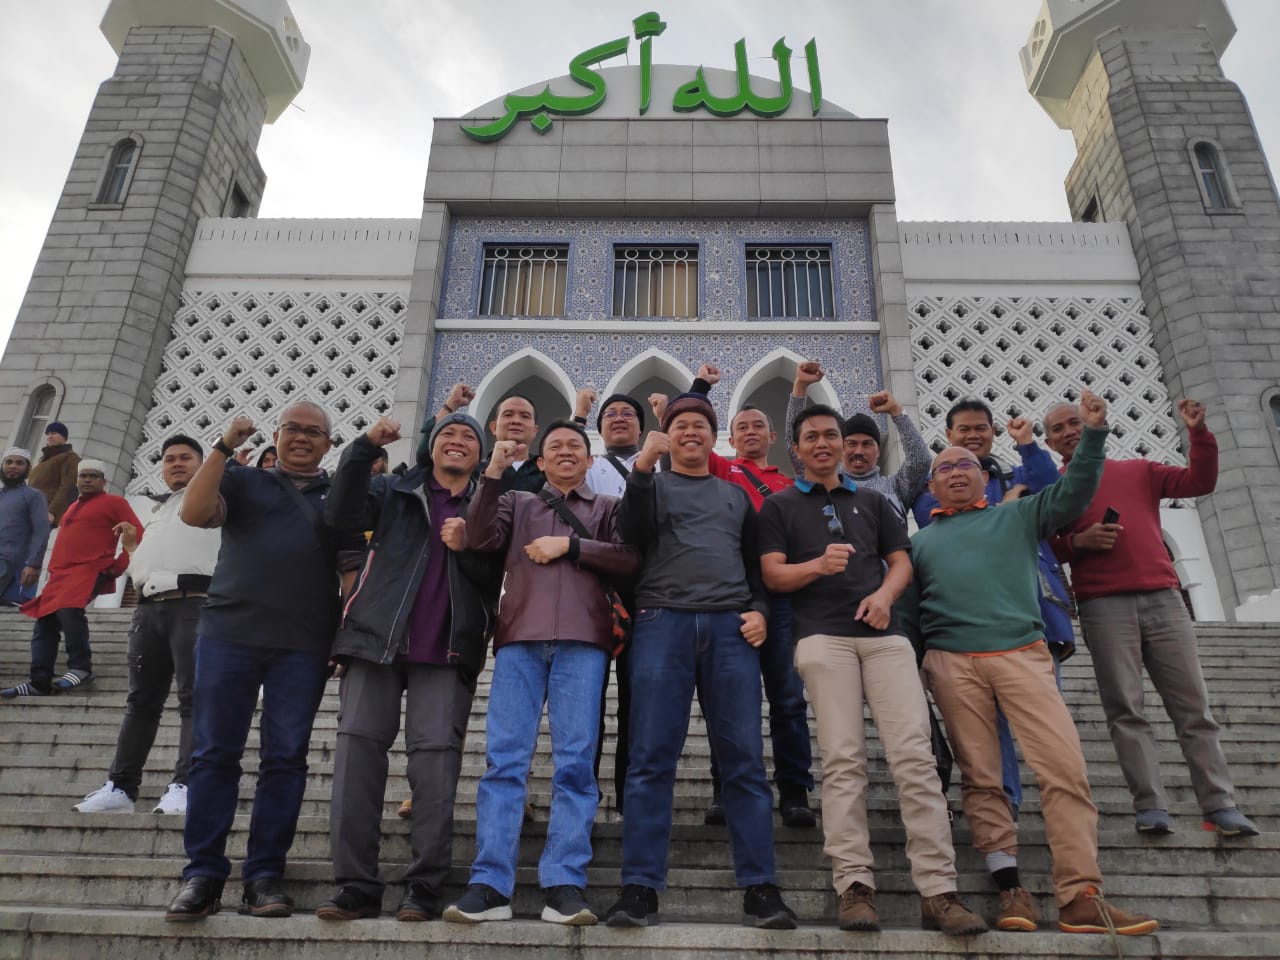 Delapan Masjid Atau Mushola Yang Bisa Disinggahi Ketika Berlibur ke Korea Selatan